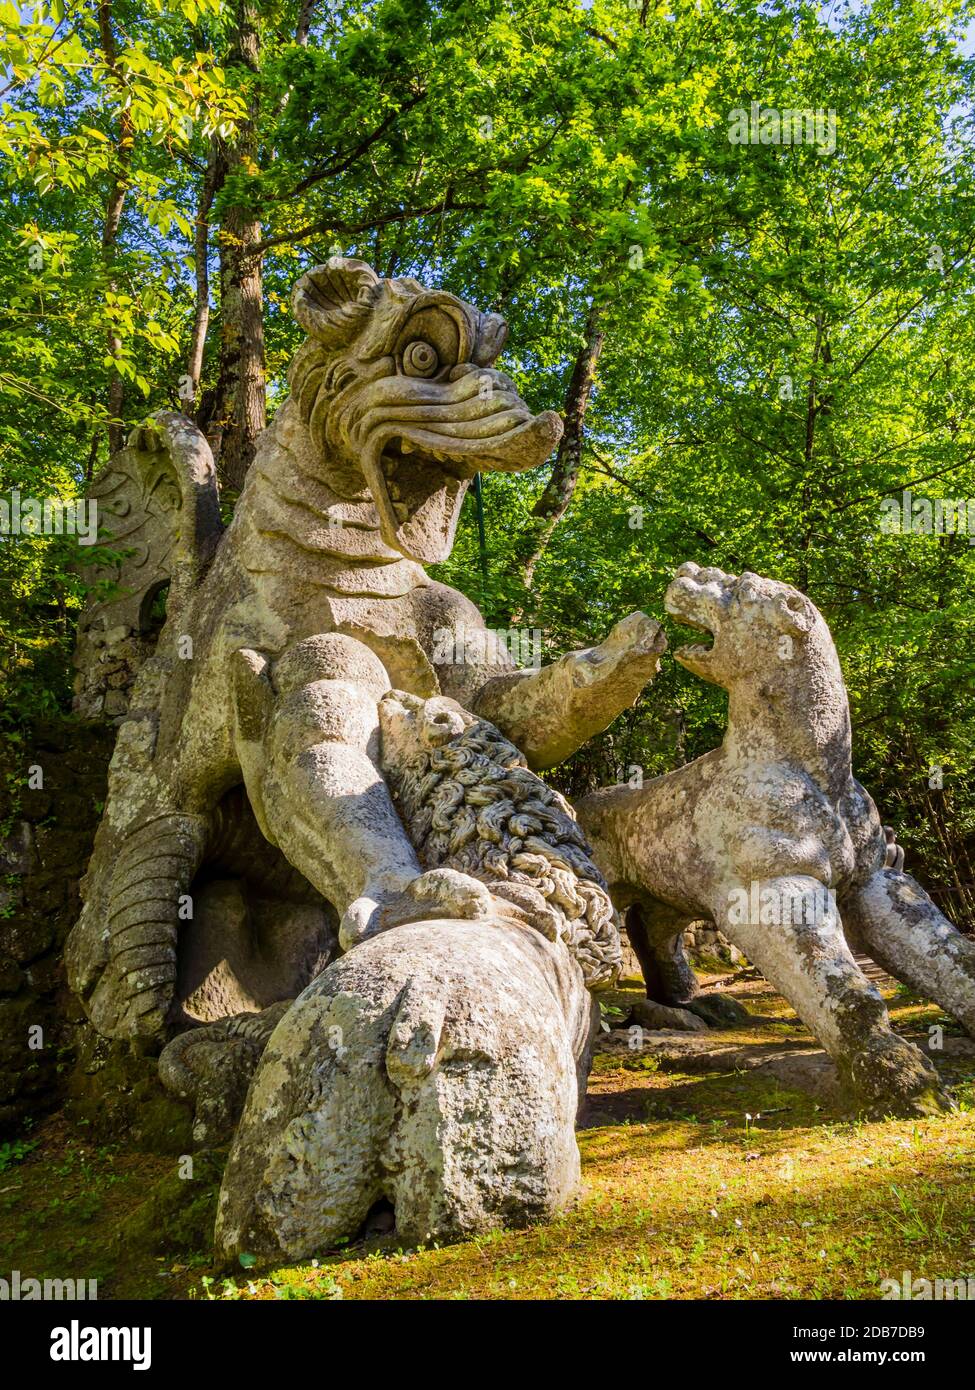 Drago che batte contro tre bestie, un'enorme scultura al Parco dei Mostri, Bosco Sacro, Giardini Bomarzo, Lazio, Italia Foto Stock